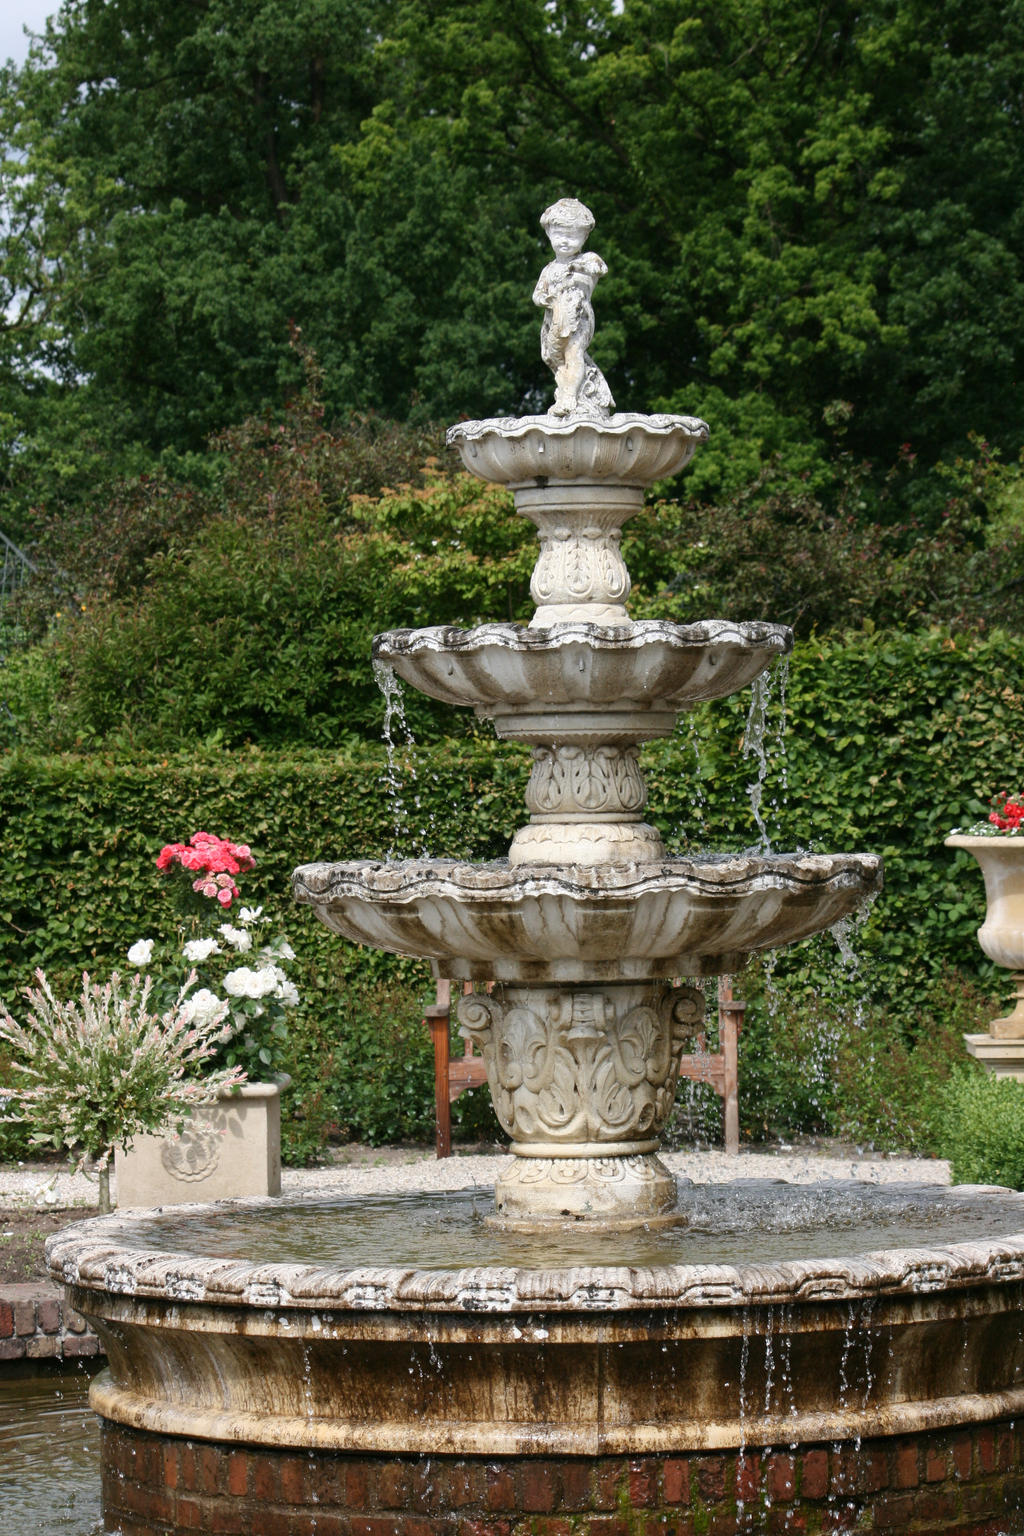 fountain in castle garden by ingeline-art on DeviantArt